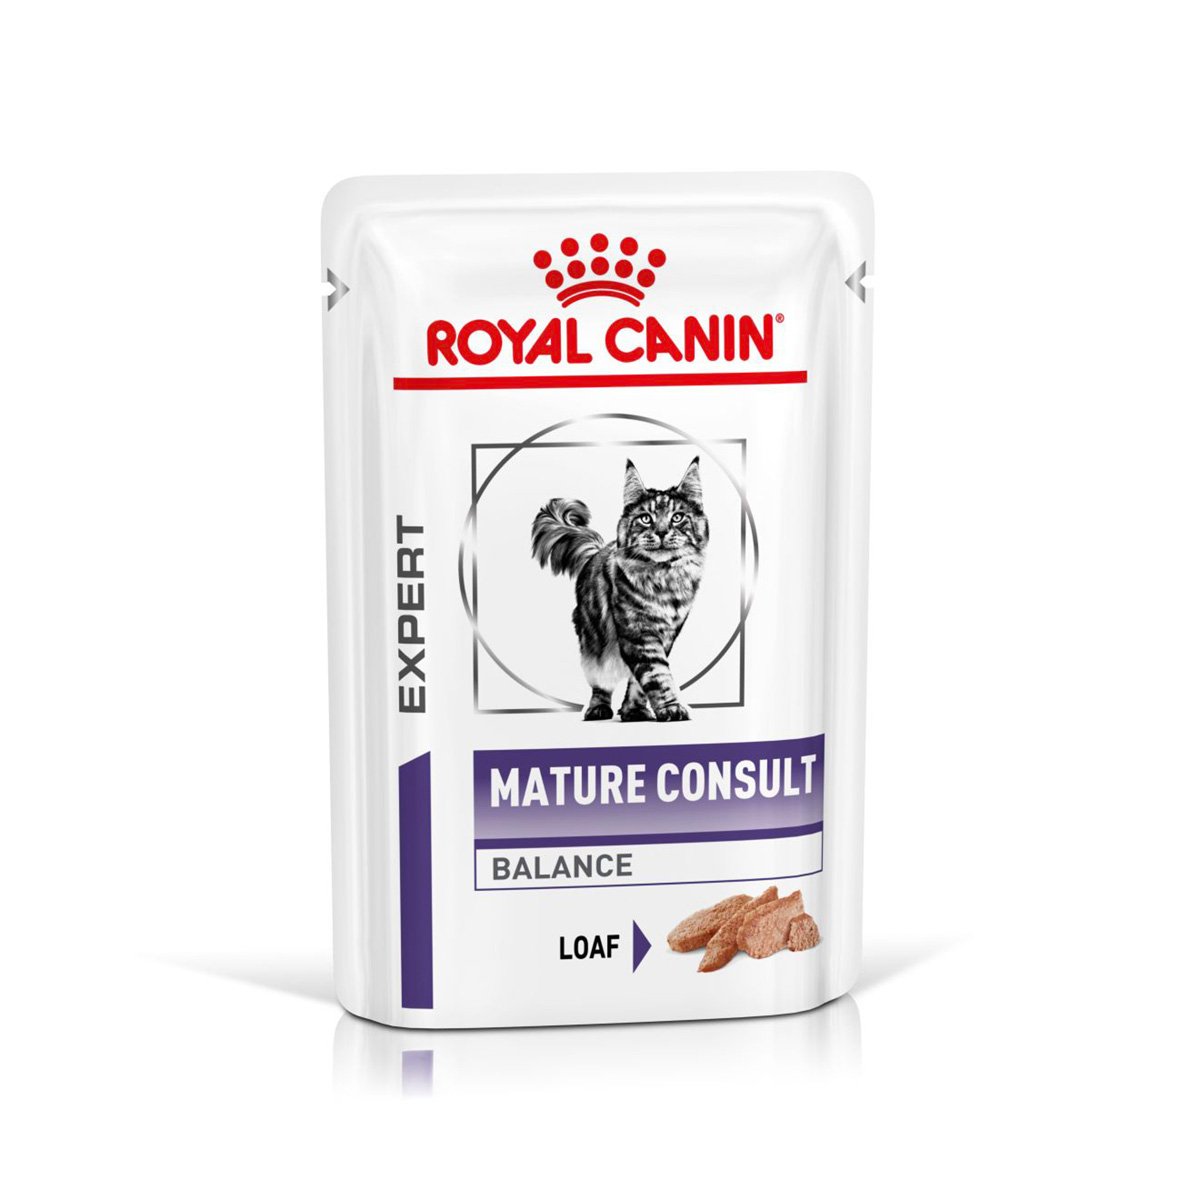 ROYAL CANIN® Expert MATURE CONSULT BALANCE Mousse Nassfutter für Katzen 12x85g von Royal Canin